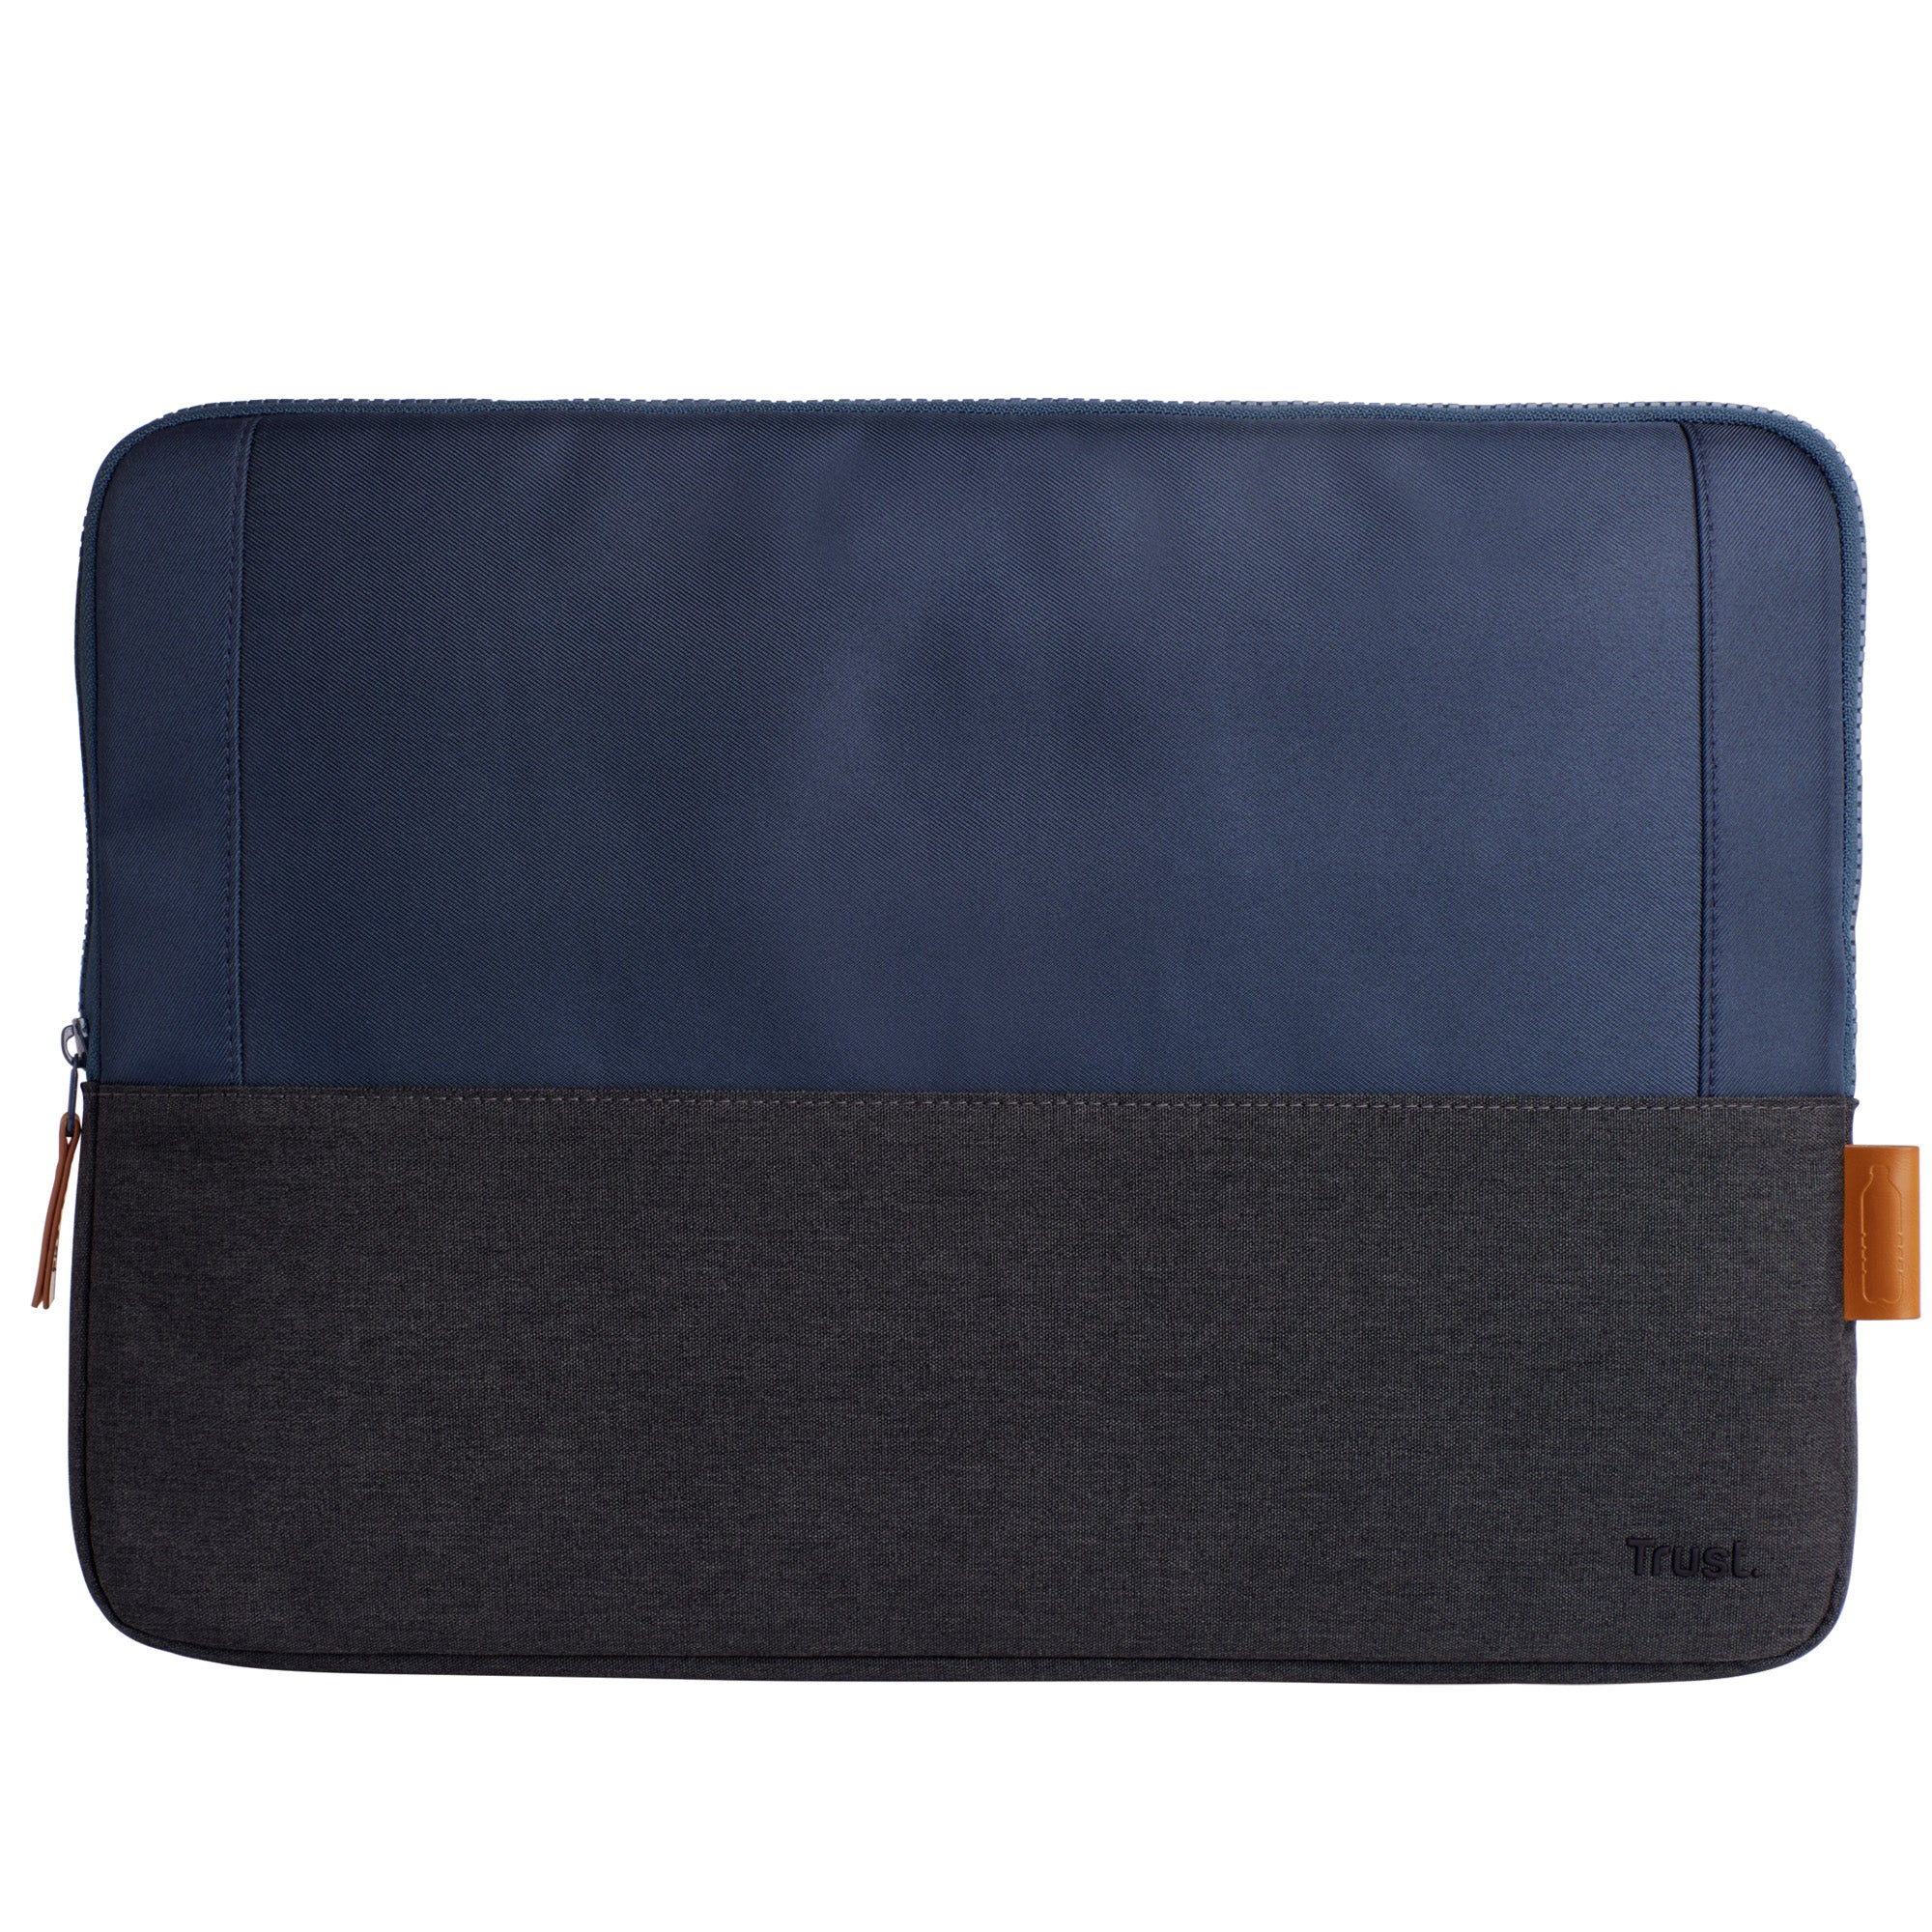 trust-lisboa-16-laptop-sleeve-blue-